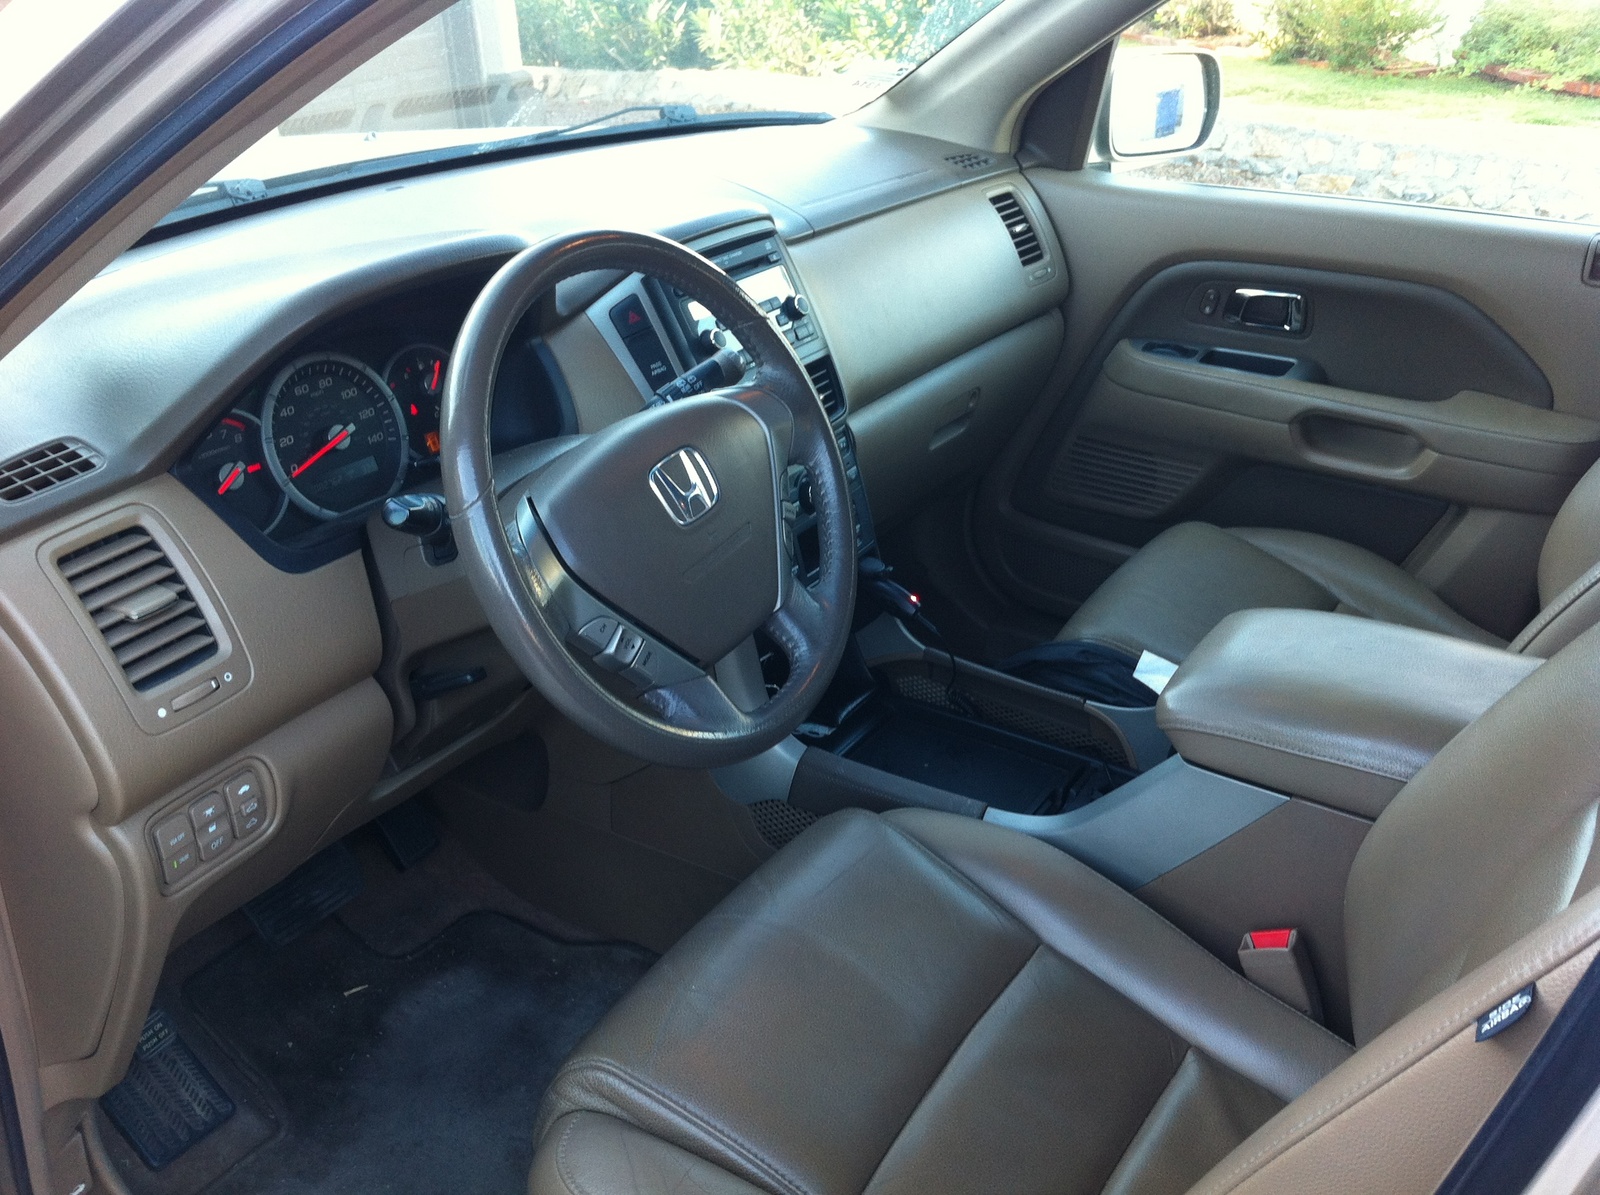 2006 Honda pilot interior specifications #3